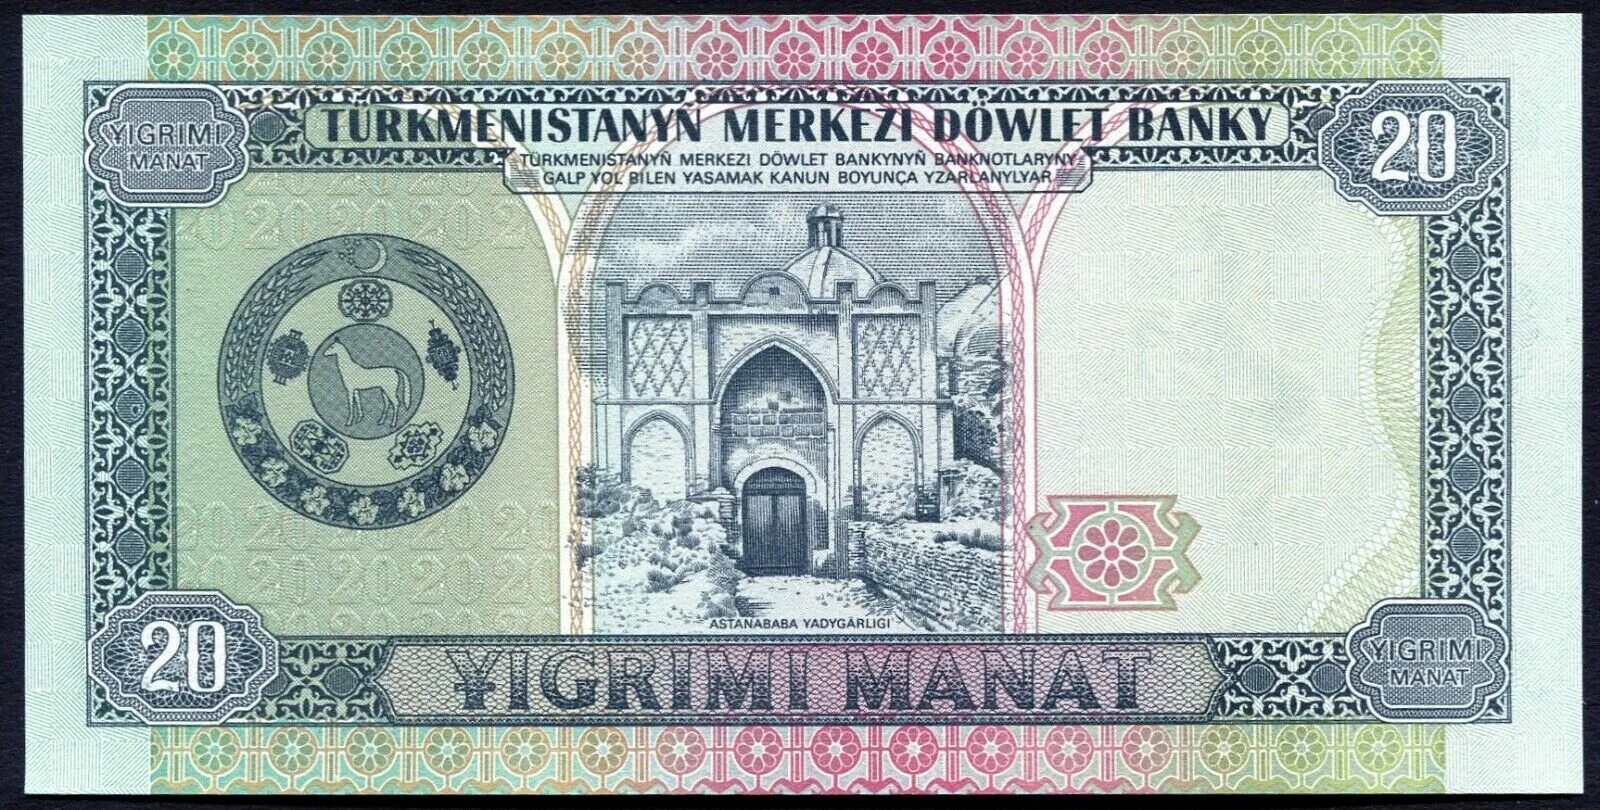 5000 манат. Манат Туркменистан 1993 года. Туркменские 20 купюры. Туркменский манат купюры. 20 Манат Туркменистан.